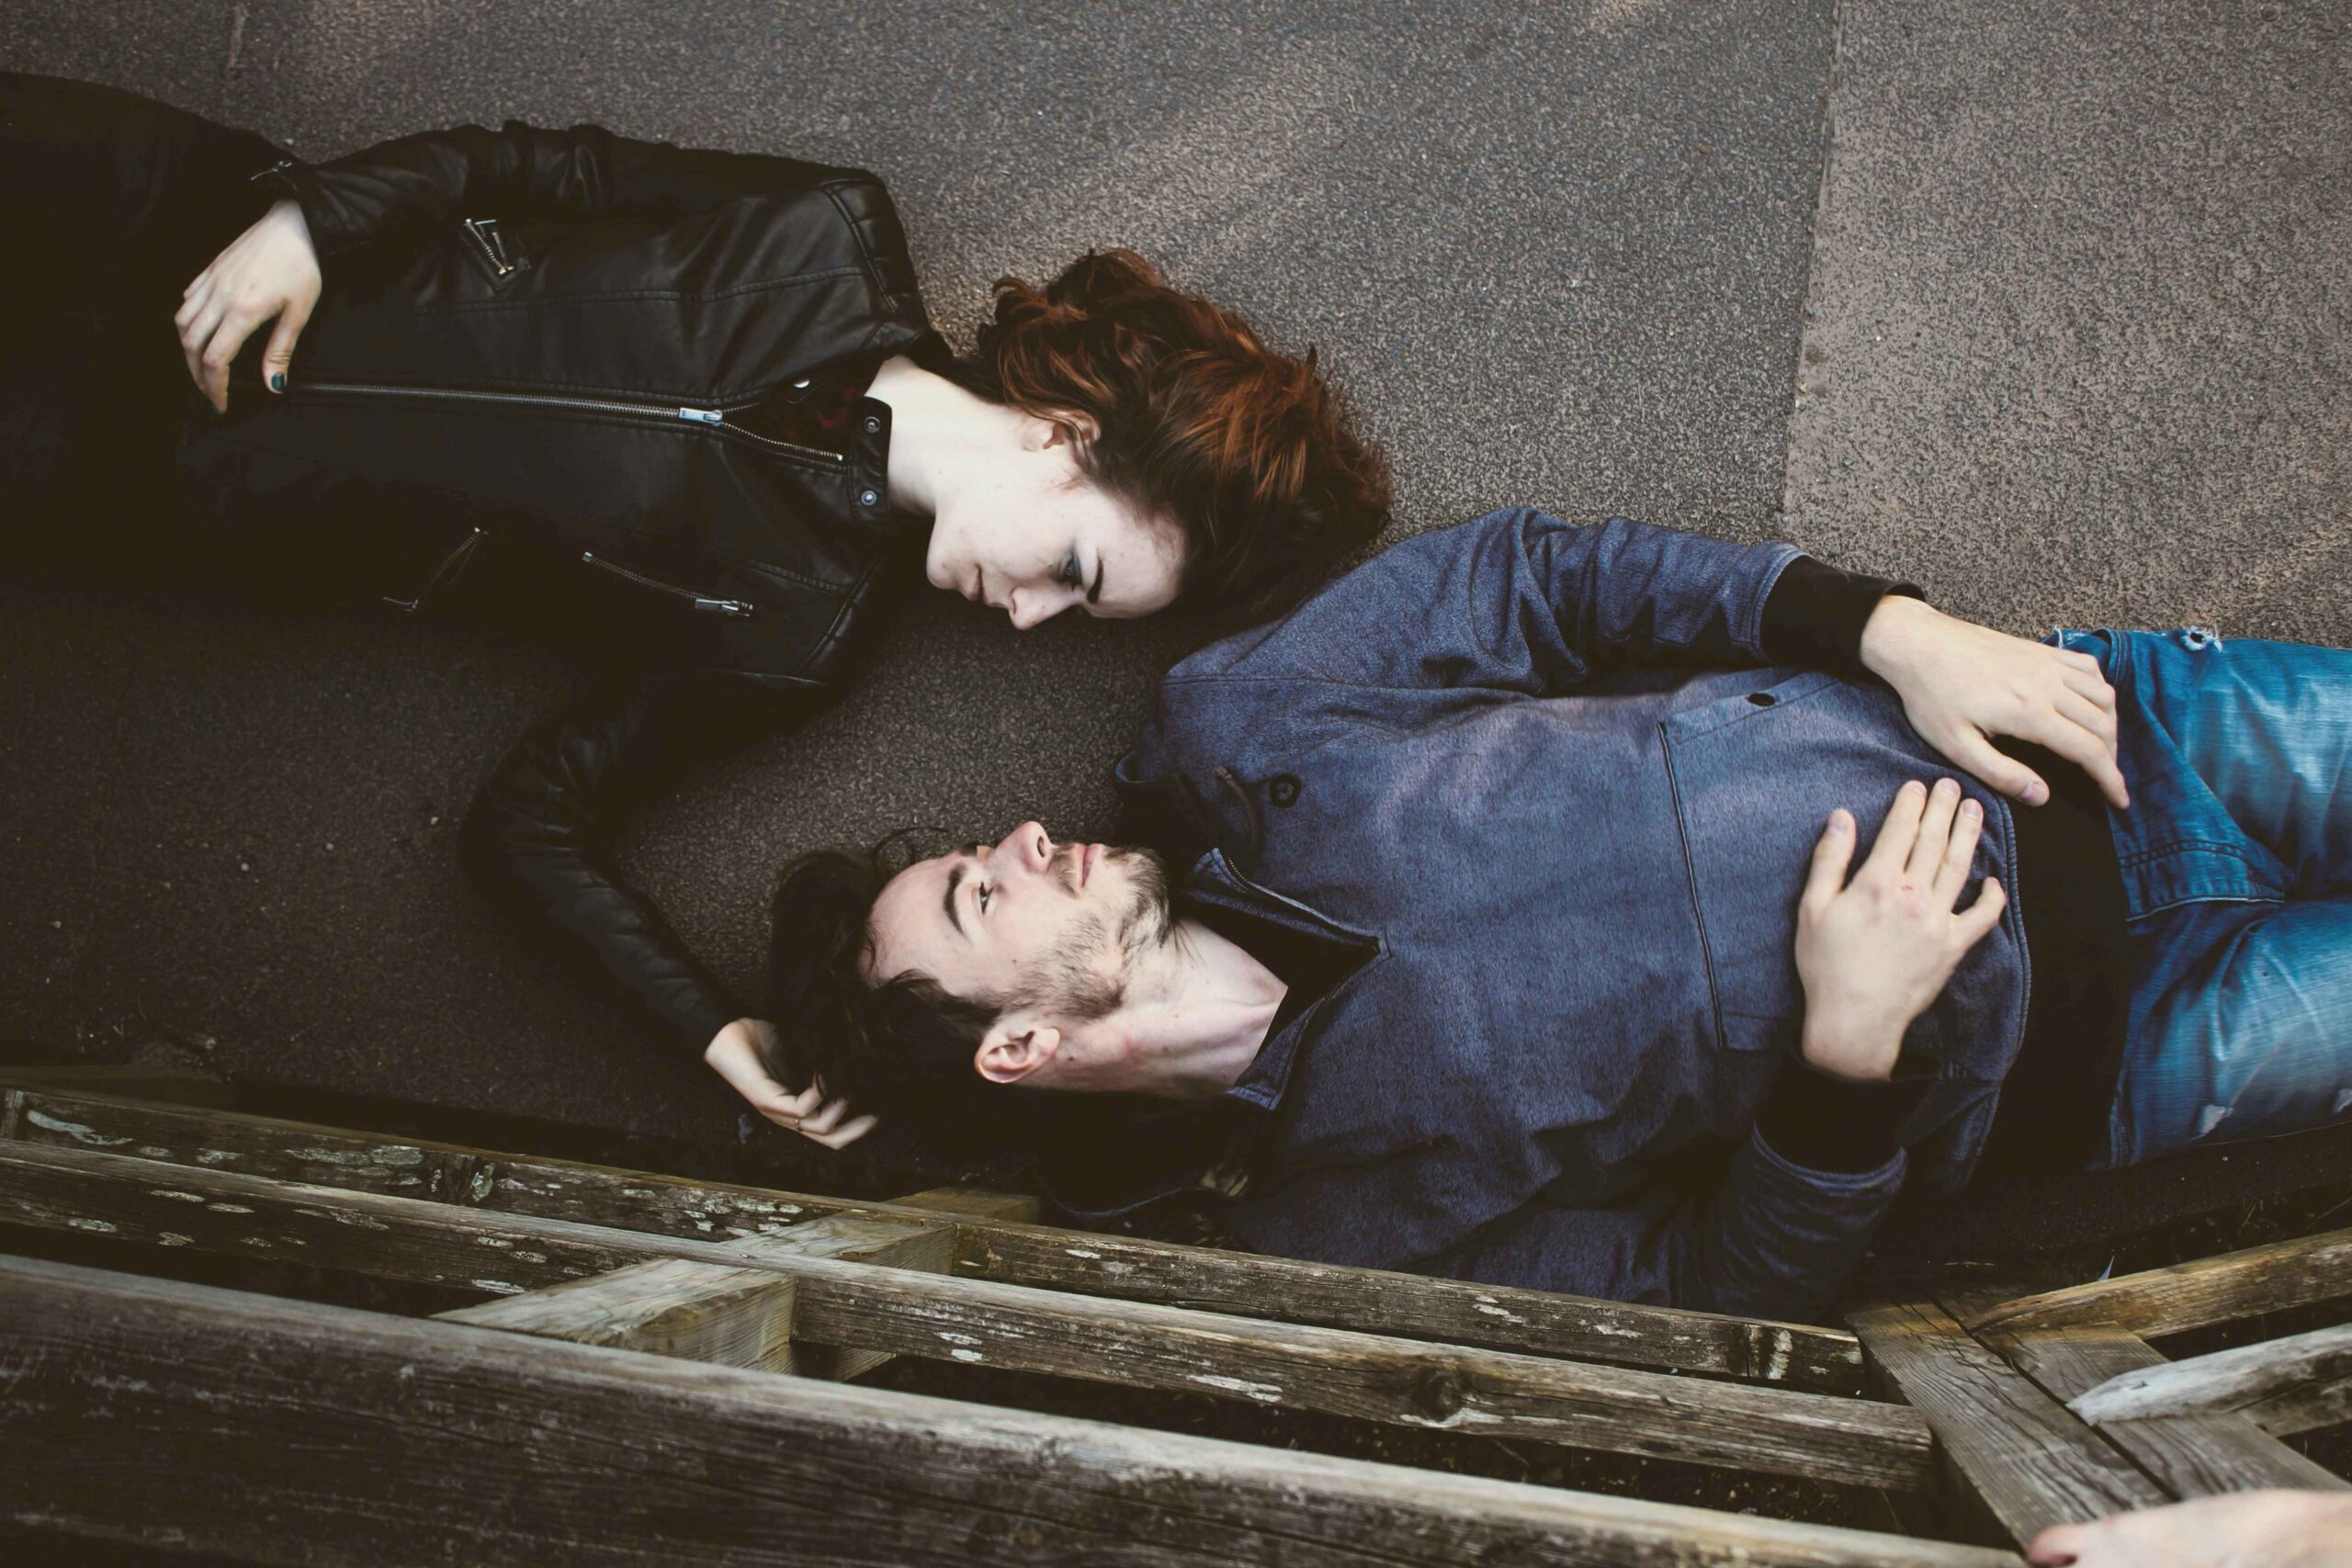 Man en vrouw die elkaar respectvol aankijken, liggend op de grond.